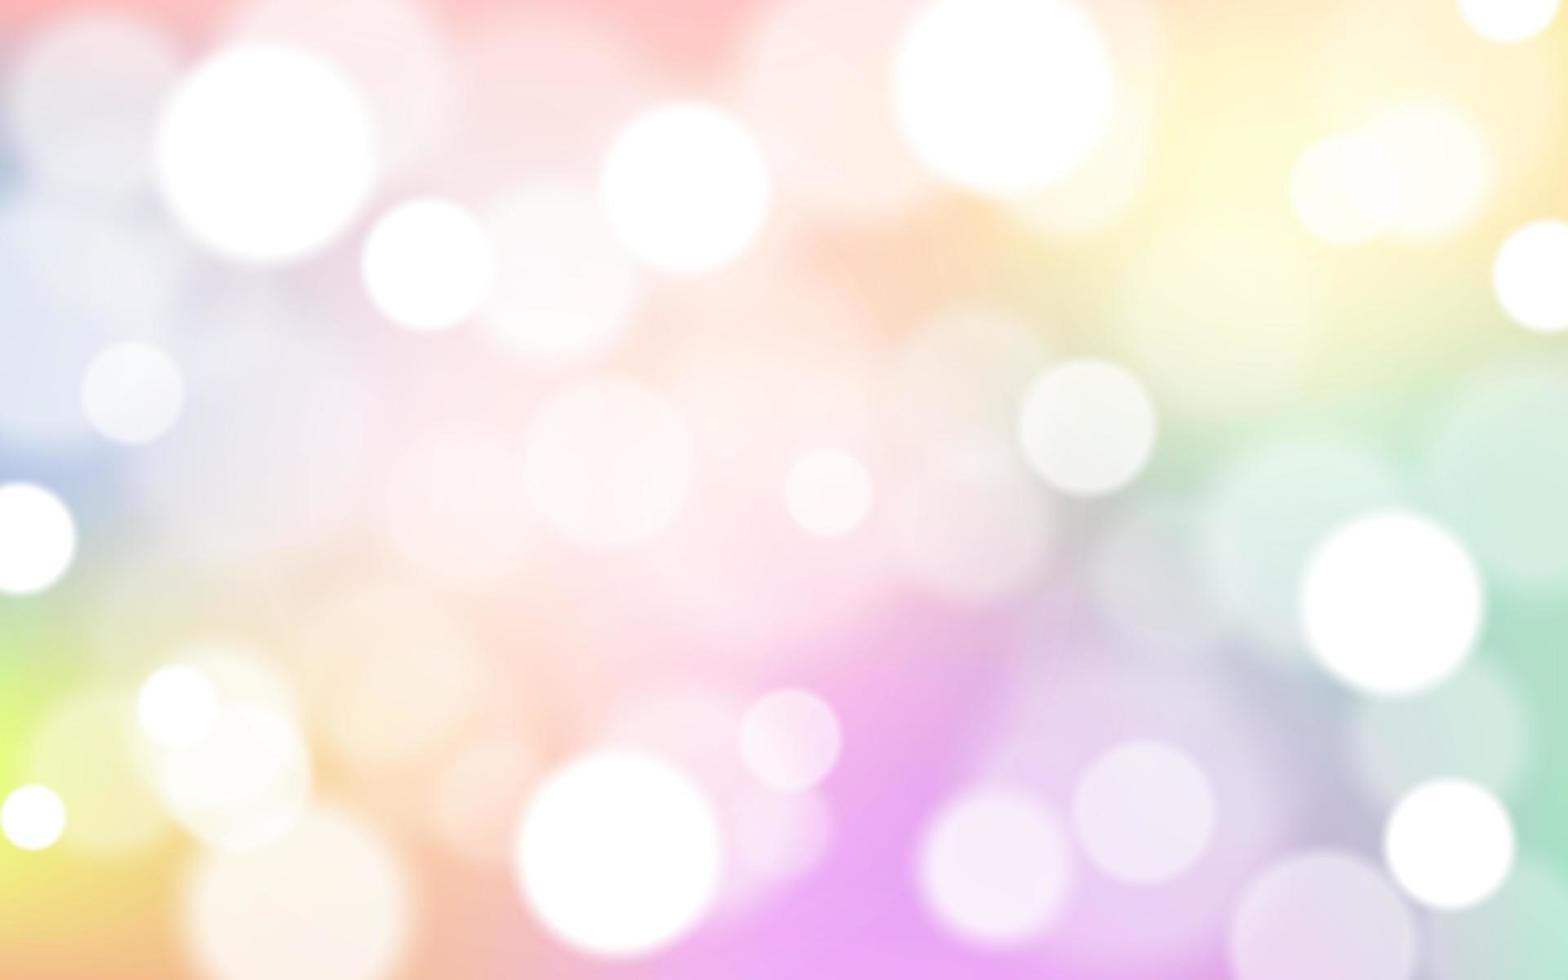 kleurrijk regenboog bokeh zacht licht abstract achtergrond, vector eps 10 illustratie bokeh deeltjes, achtergrond decoratie